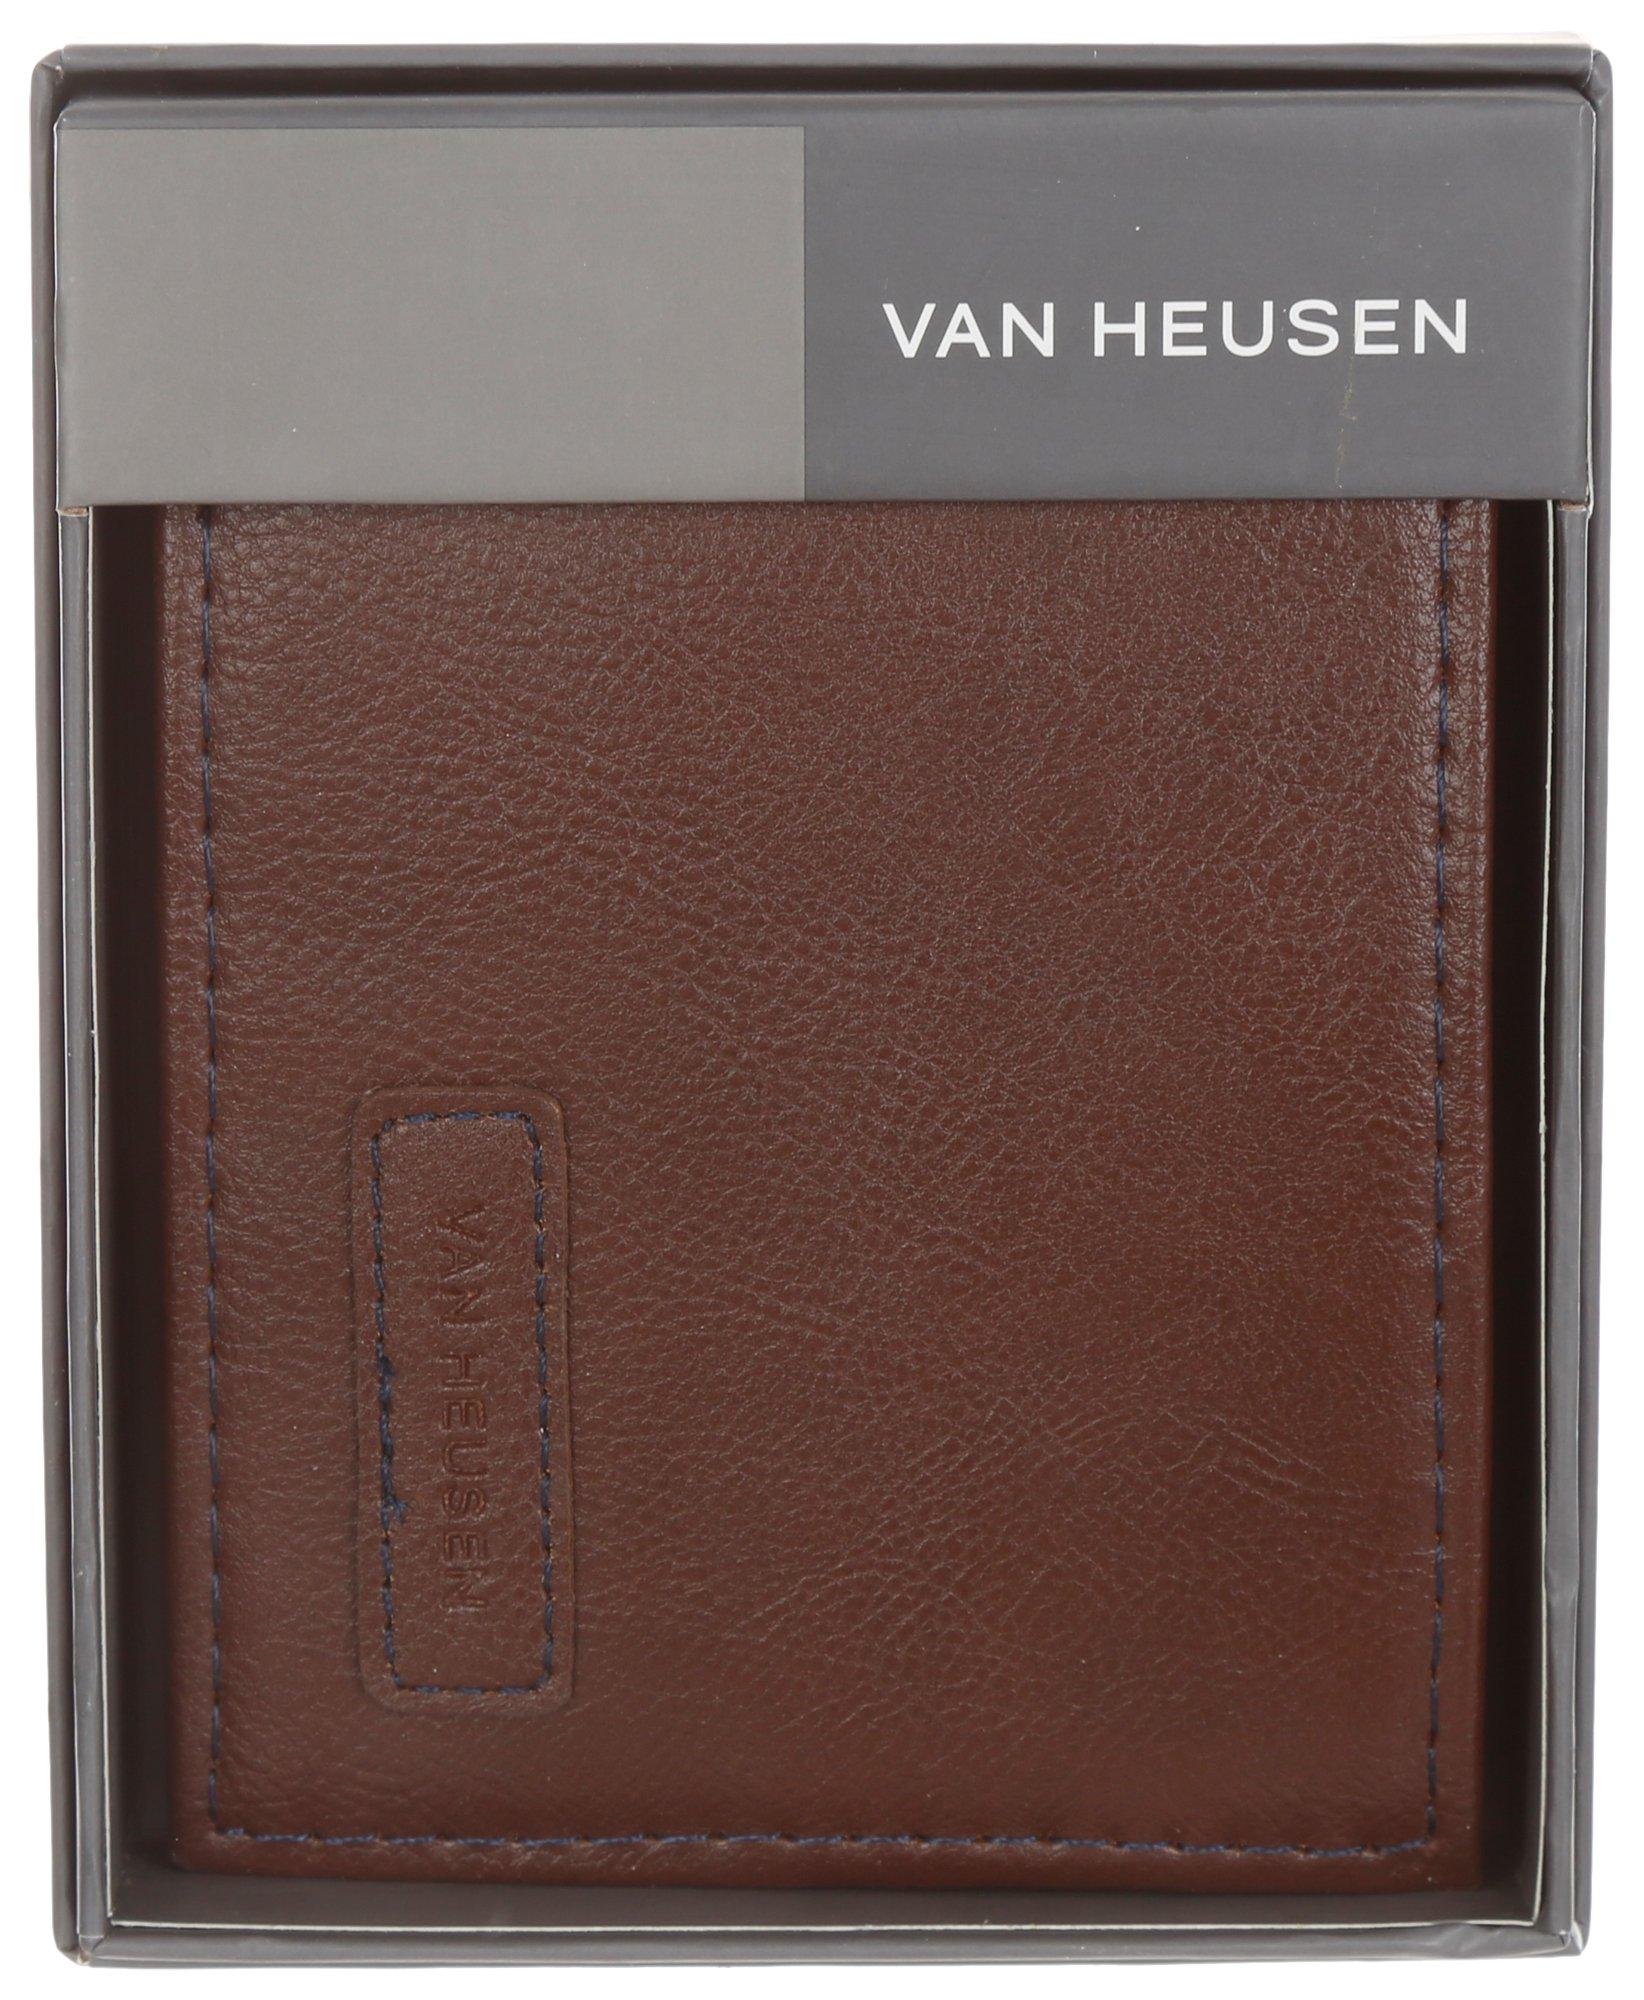 Men's Leather Passcase Wallet